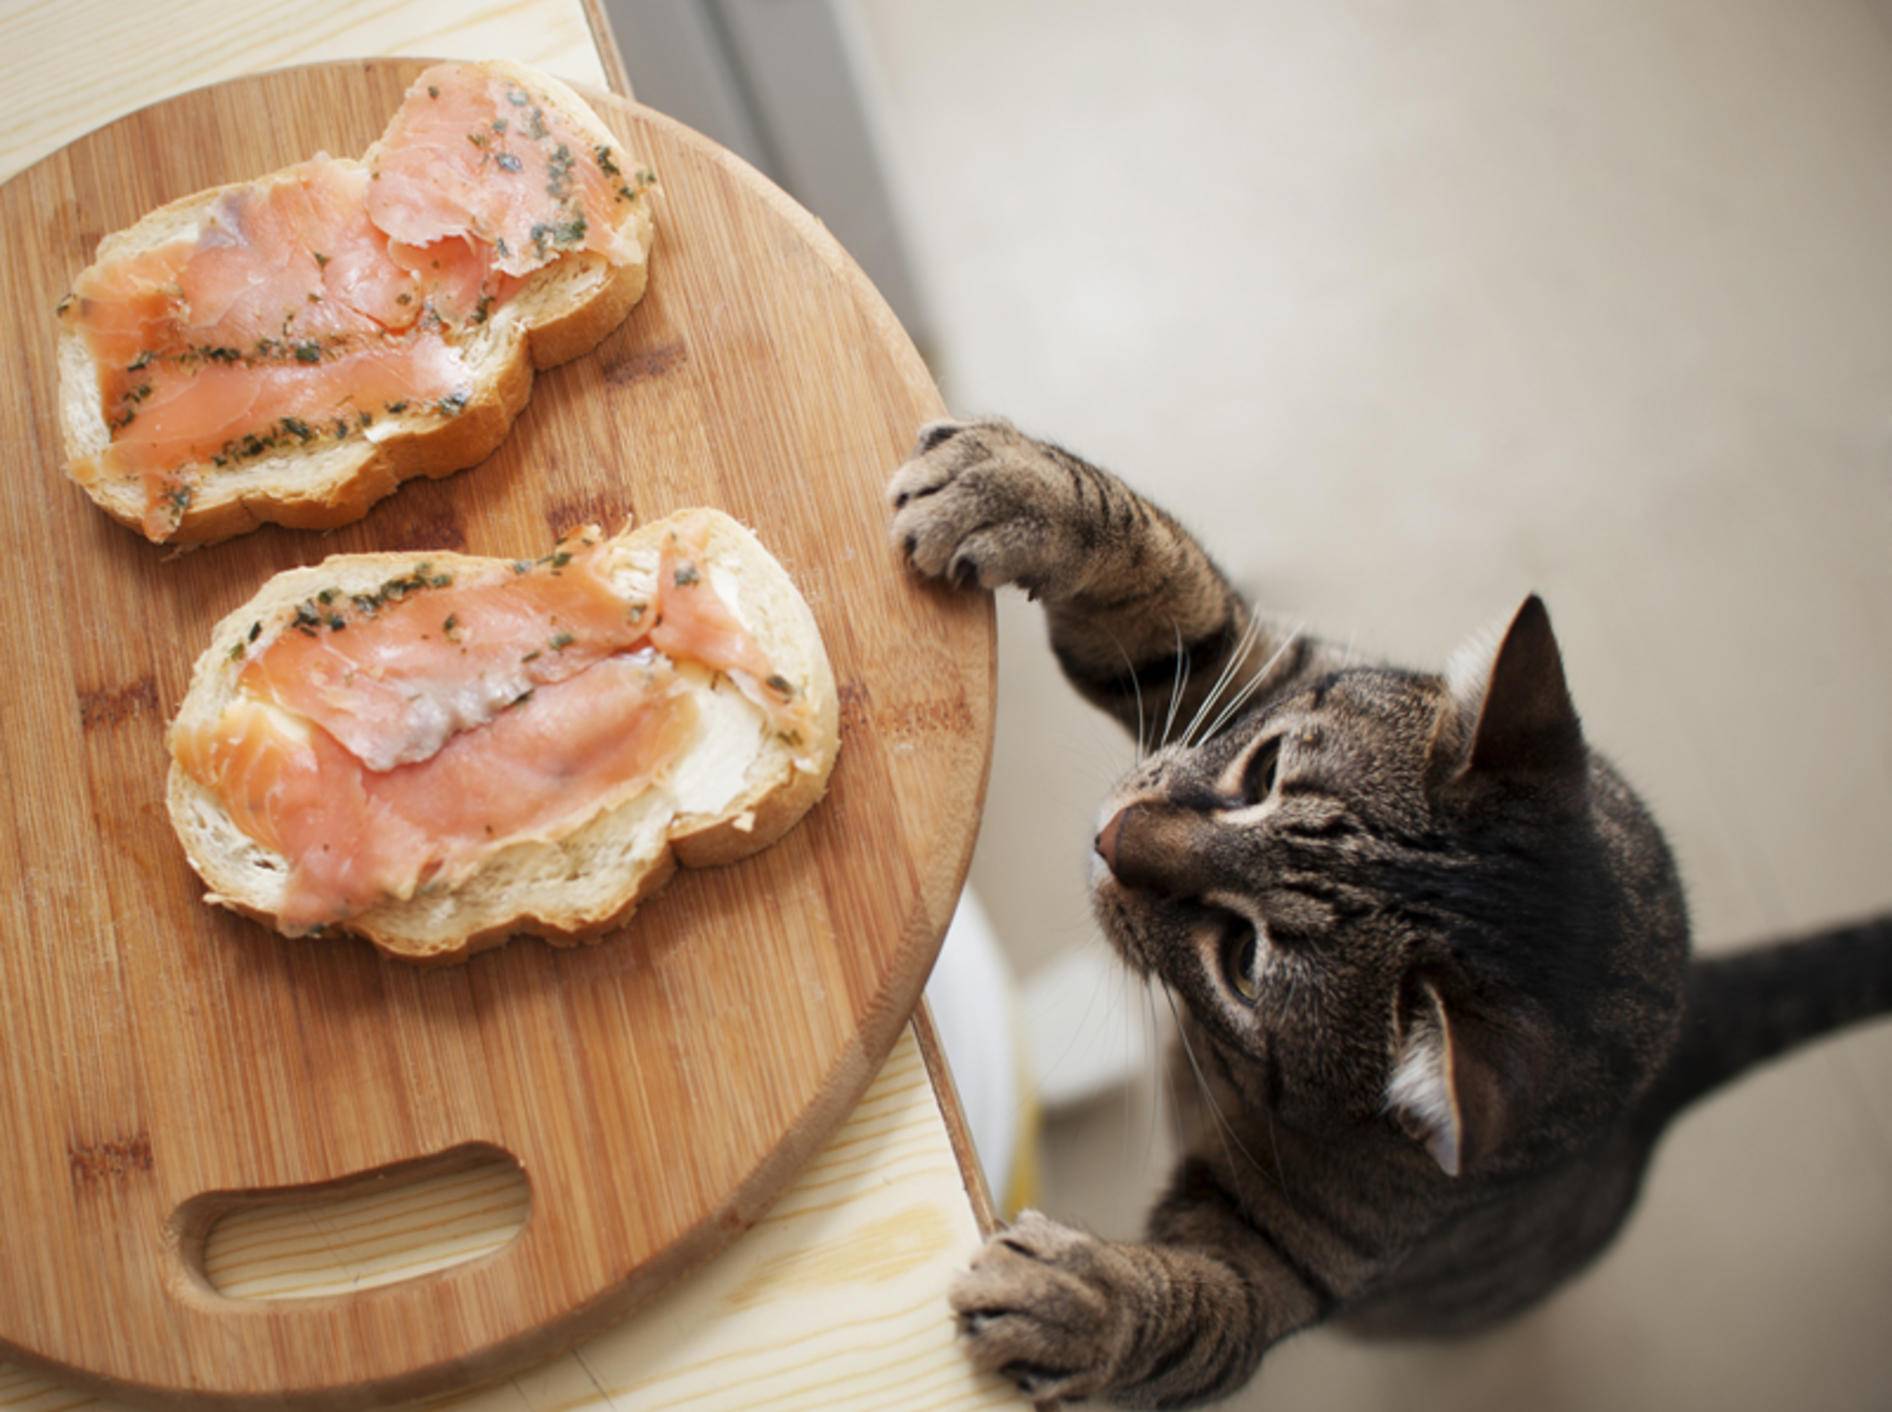 Lachsaufschnitt enthält viel Salz, darf die Katze davon naschen? – Shutterstock / ToskanaINC